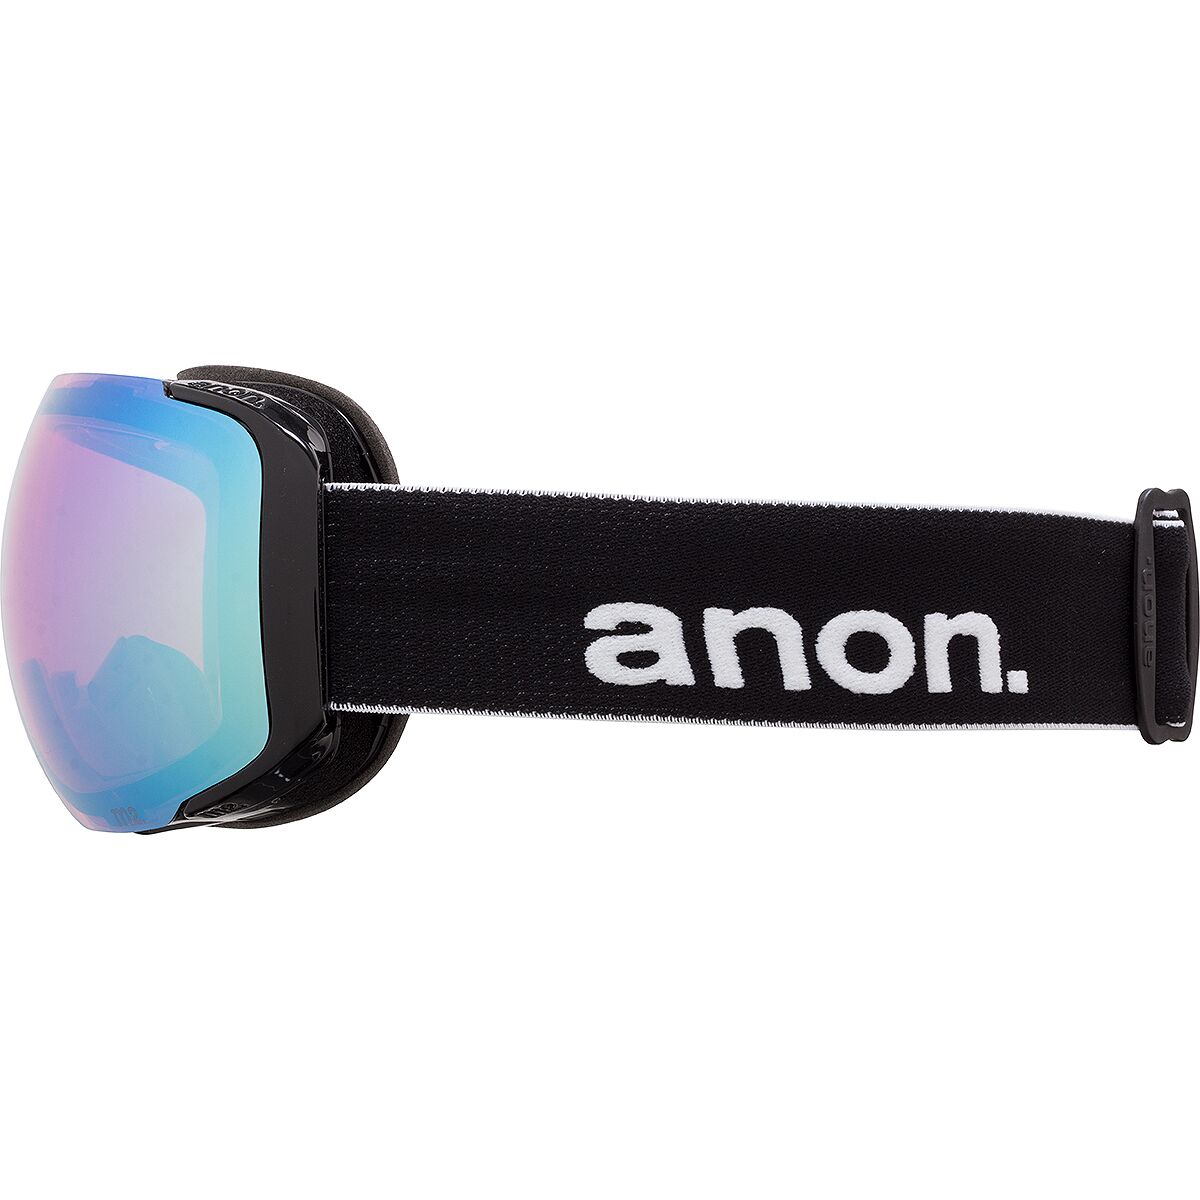 Anon M2 Asian Fit Goggles - Ski